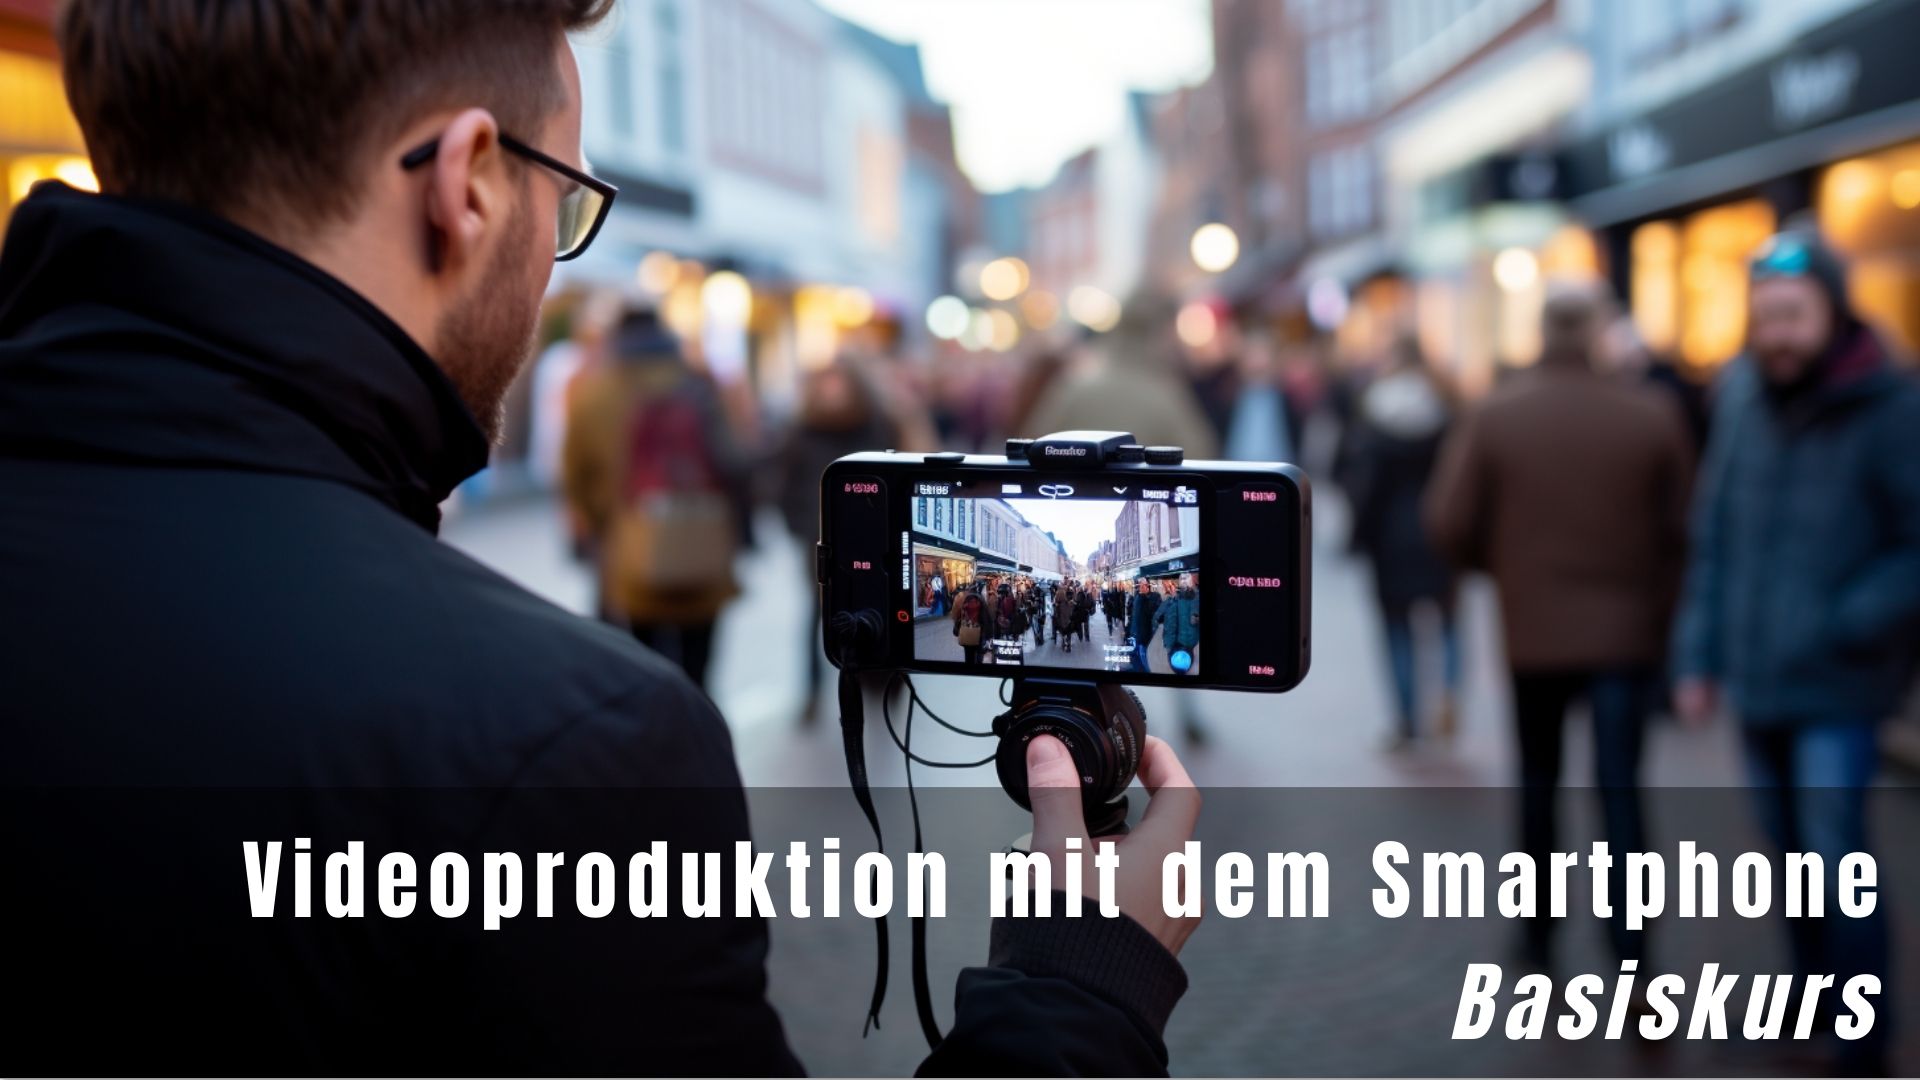 Videoproduktion mit dem Smartphone - Basiskurs | Onlineworkshop